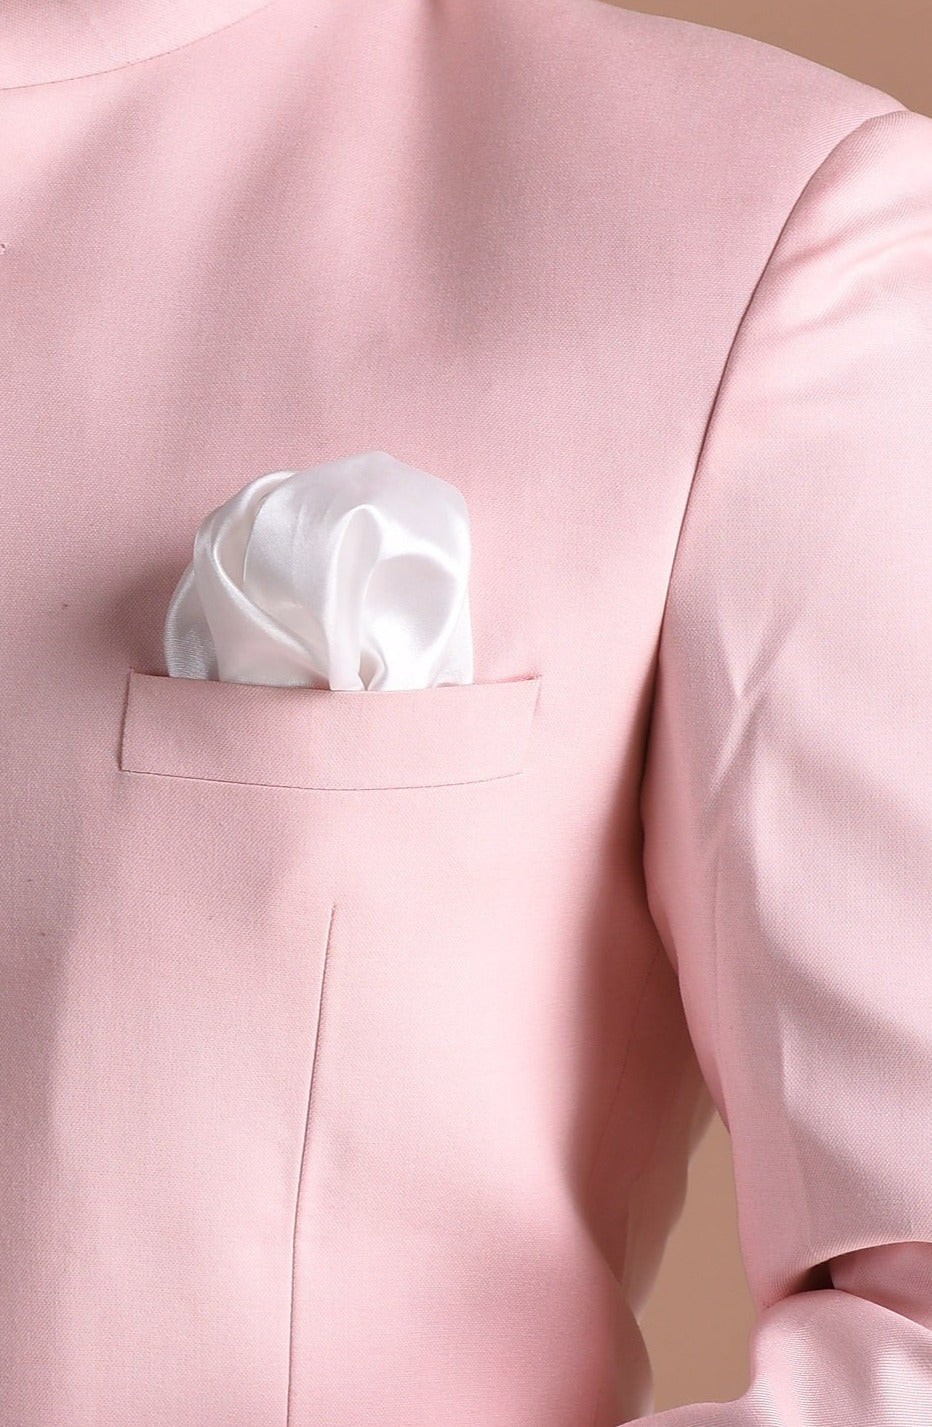 Light Pink Bandhgala Jodhpuri Designer Blazer With White Trouser